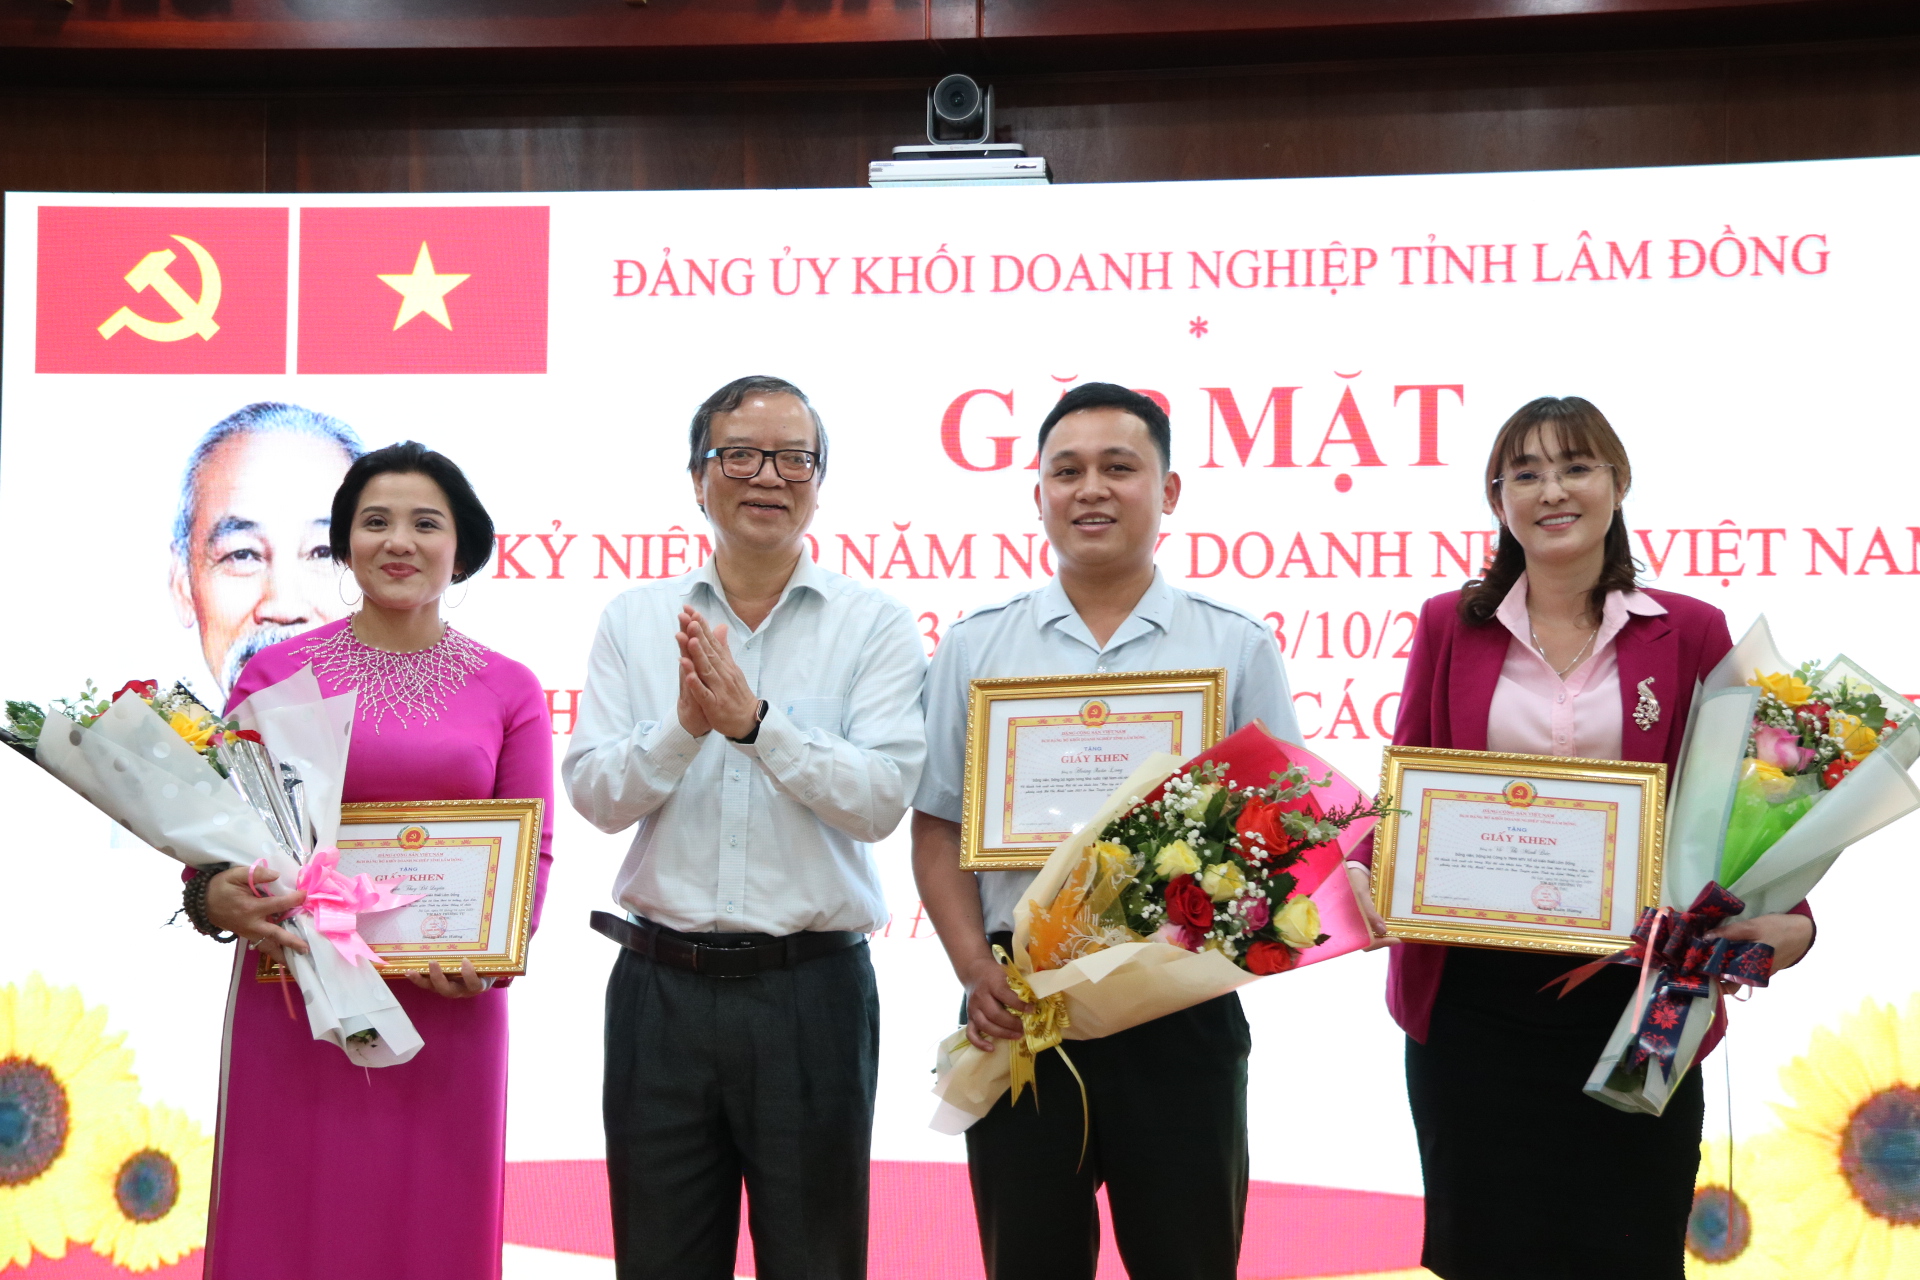 Khen thưởng cho các cá nhân có thành tích xuất sắc trong Hội thi sân khấu hóa học tập và làm theo tư tưởng, đạo đức, phong cách Hồ Chí Minh